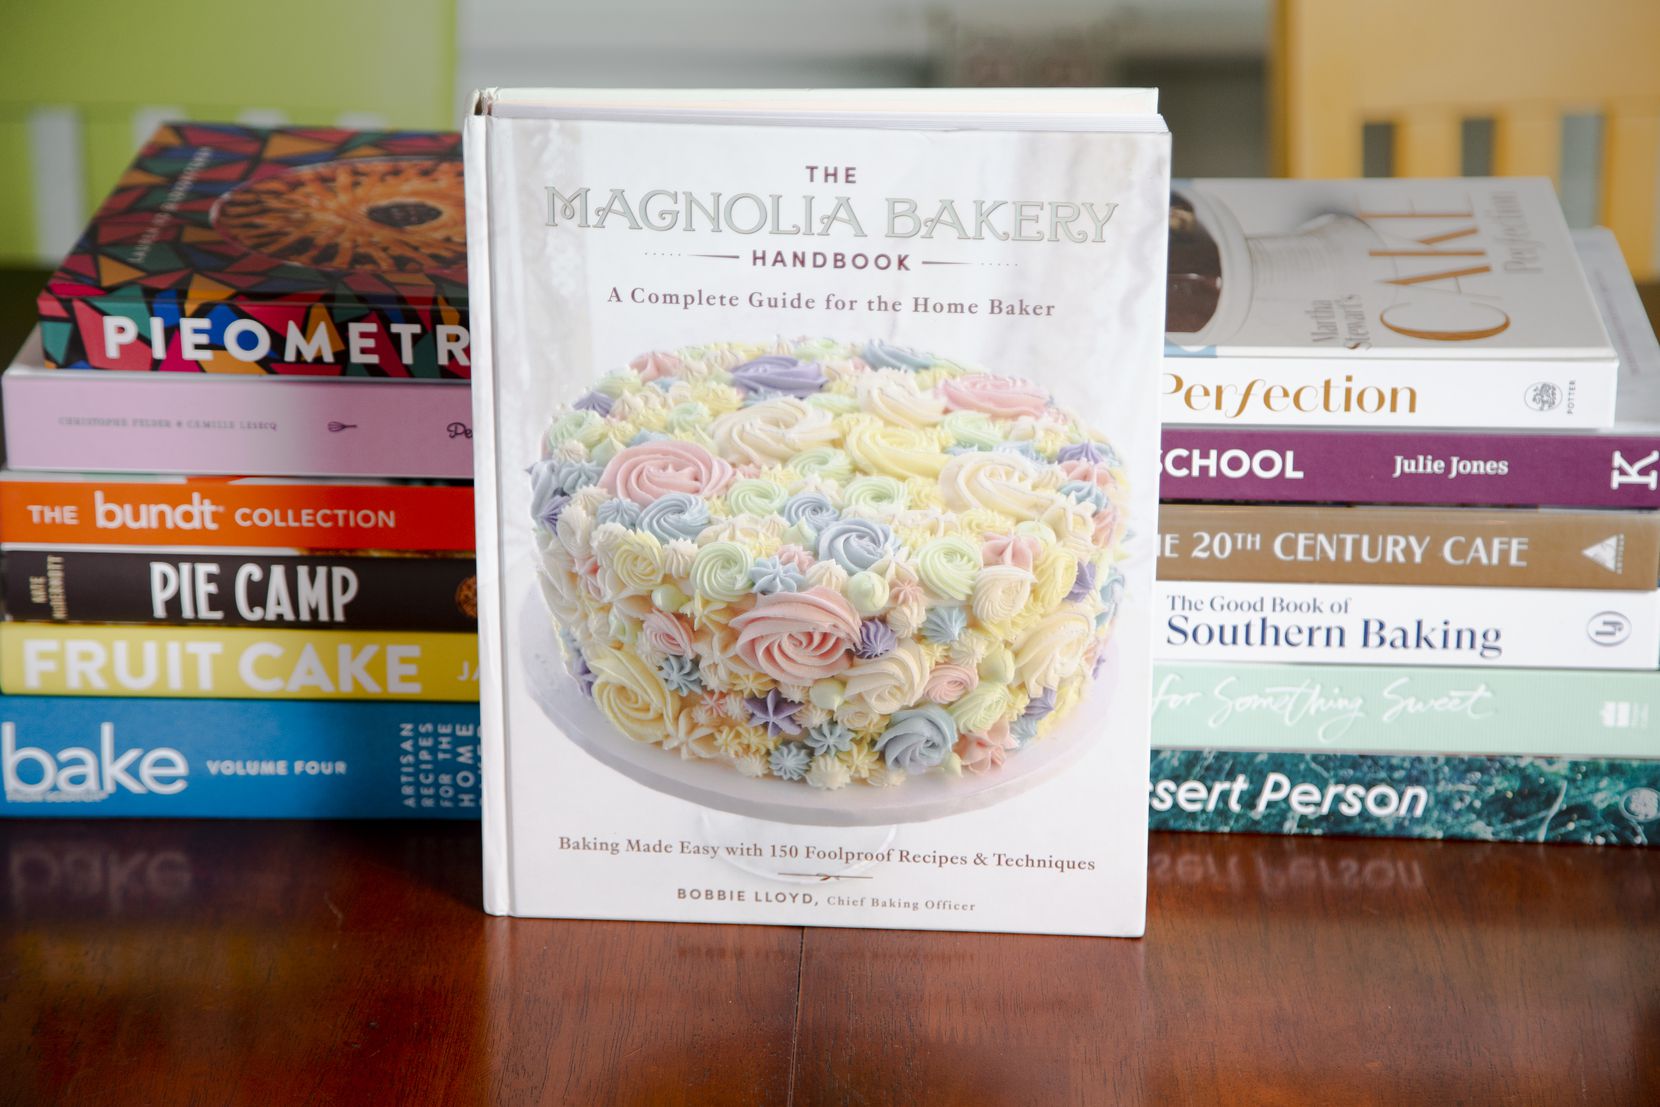 The Magnolia Bakery Handbook